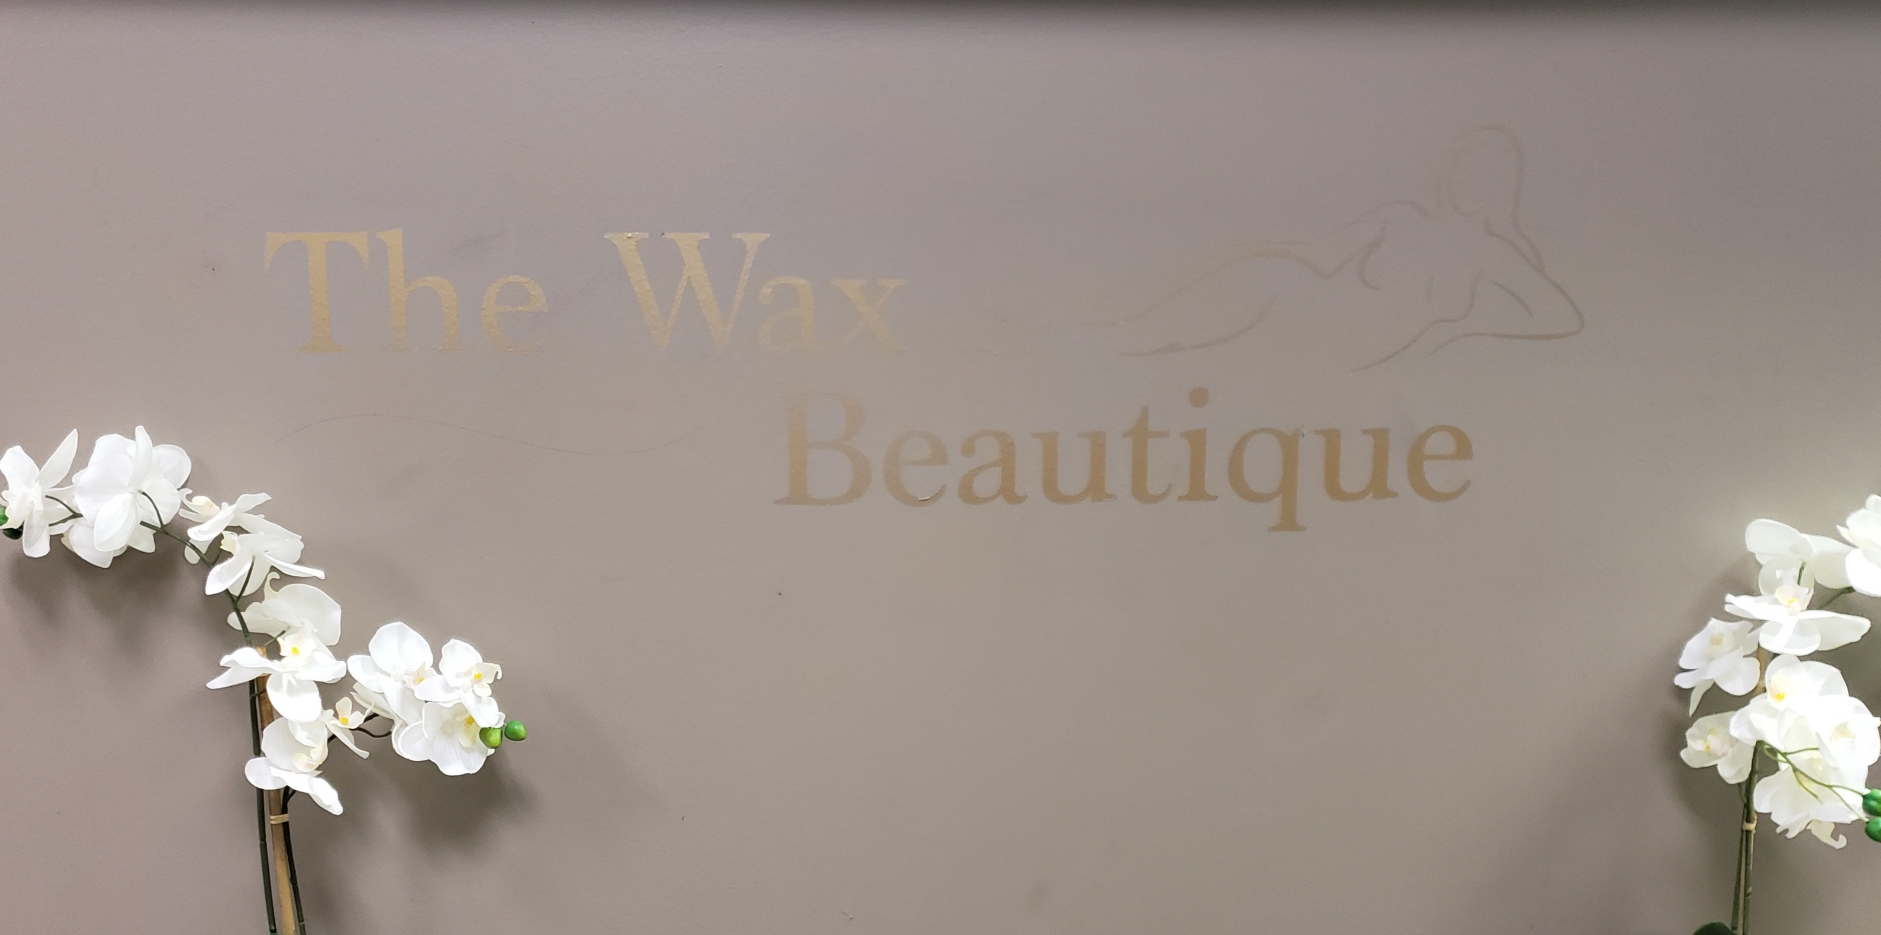 Waxbeautique LLC